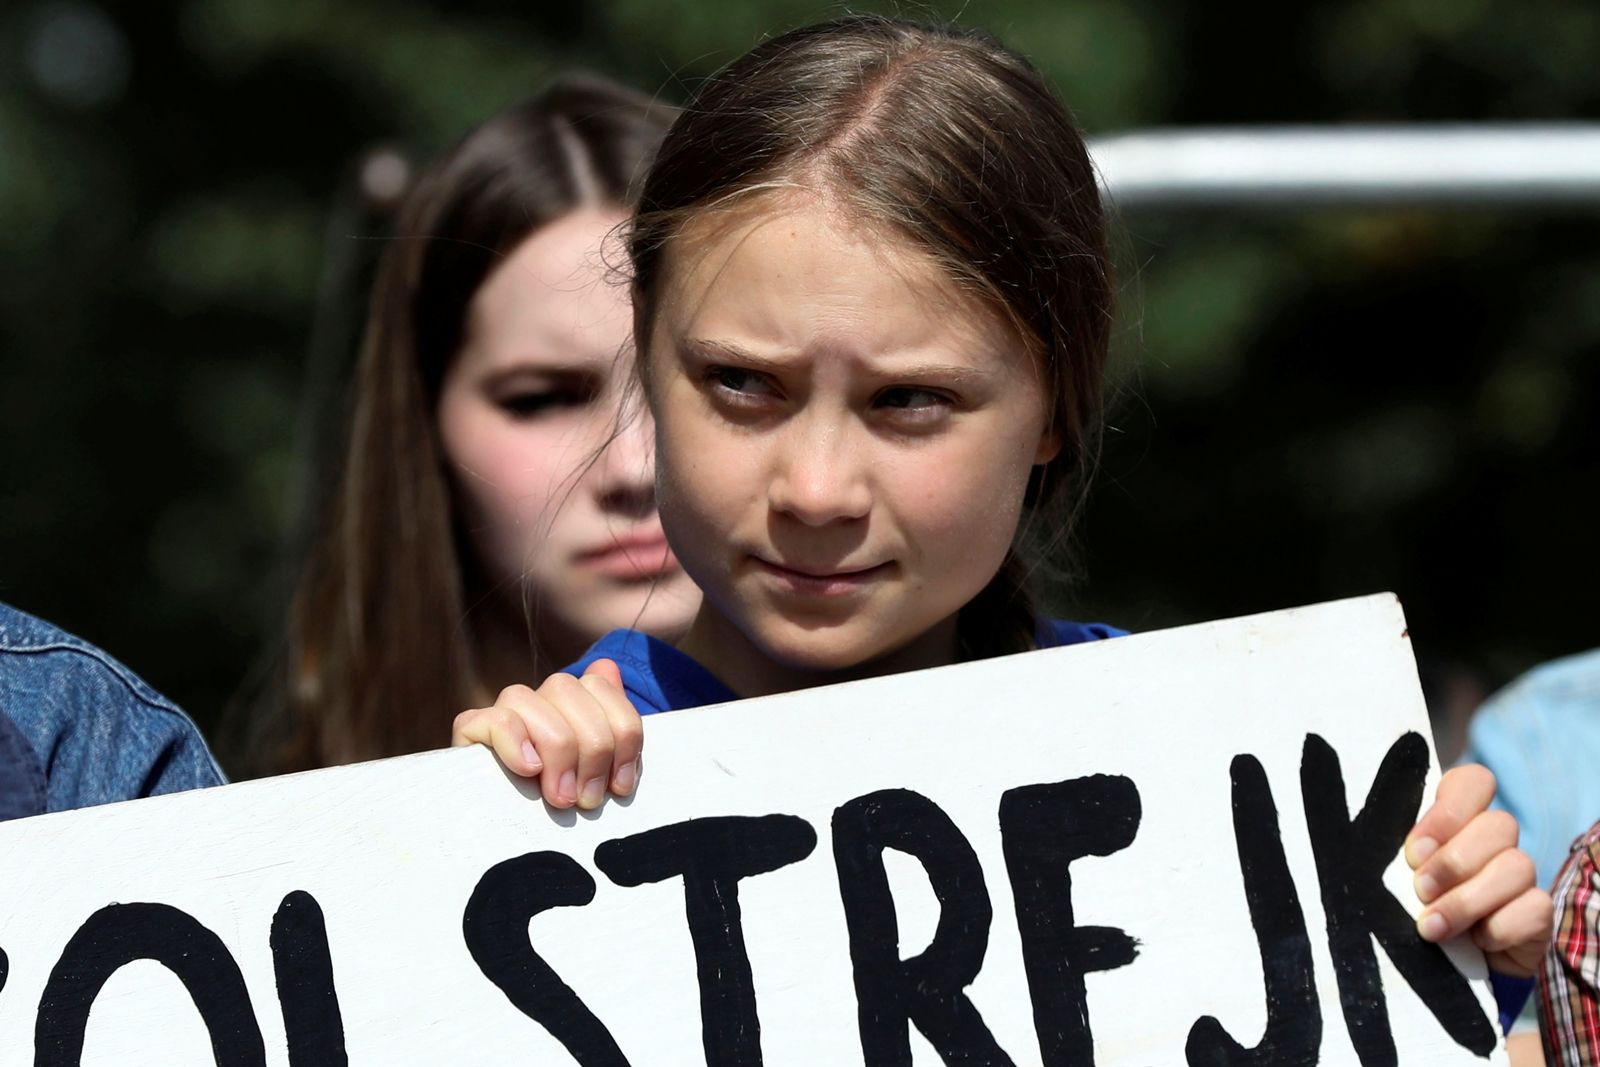 Reuters-เกรตา ธันเบิร์ก-เกรียตา ธืนแบร์ก-นักเคลื่อนไหวด้านสิ่งแวดล้อม-Greta Thunberg.JPG